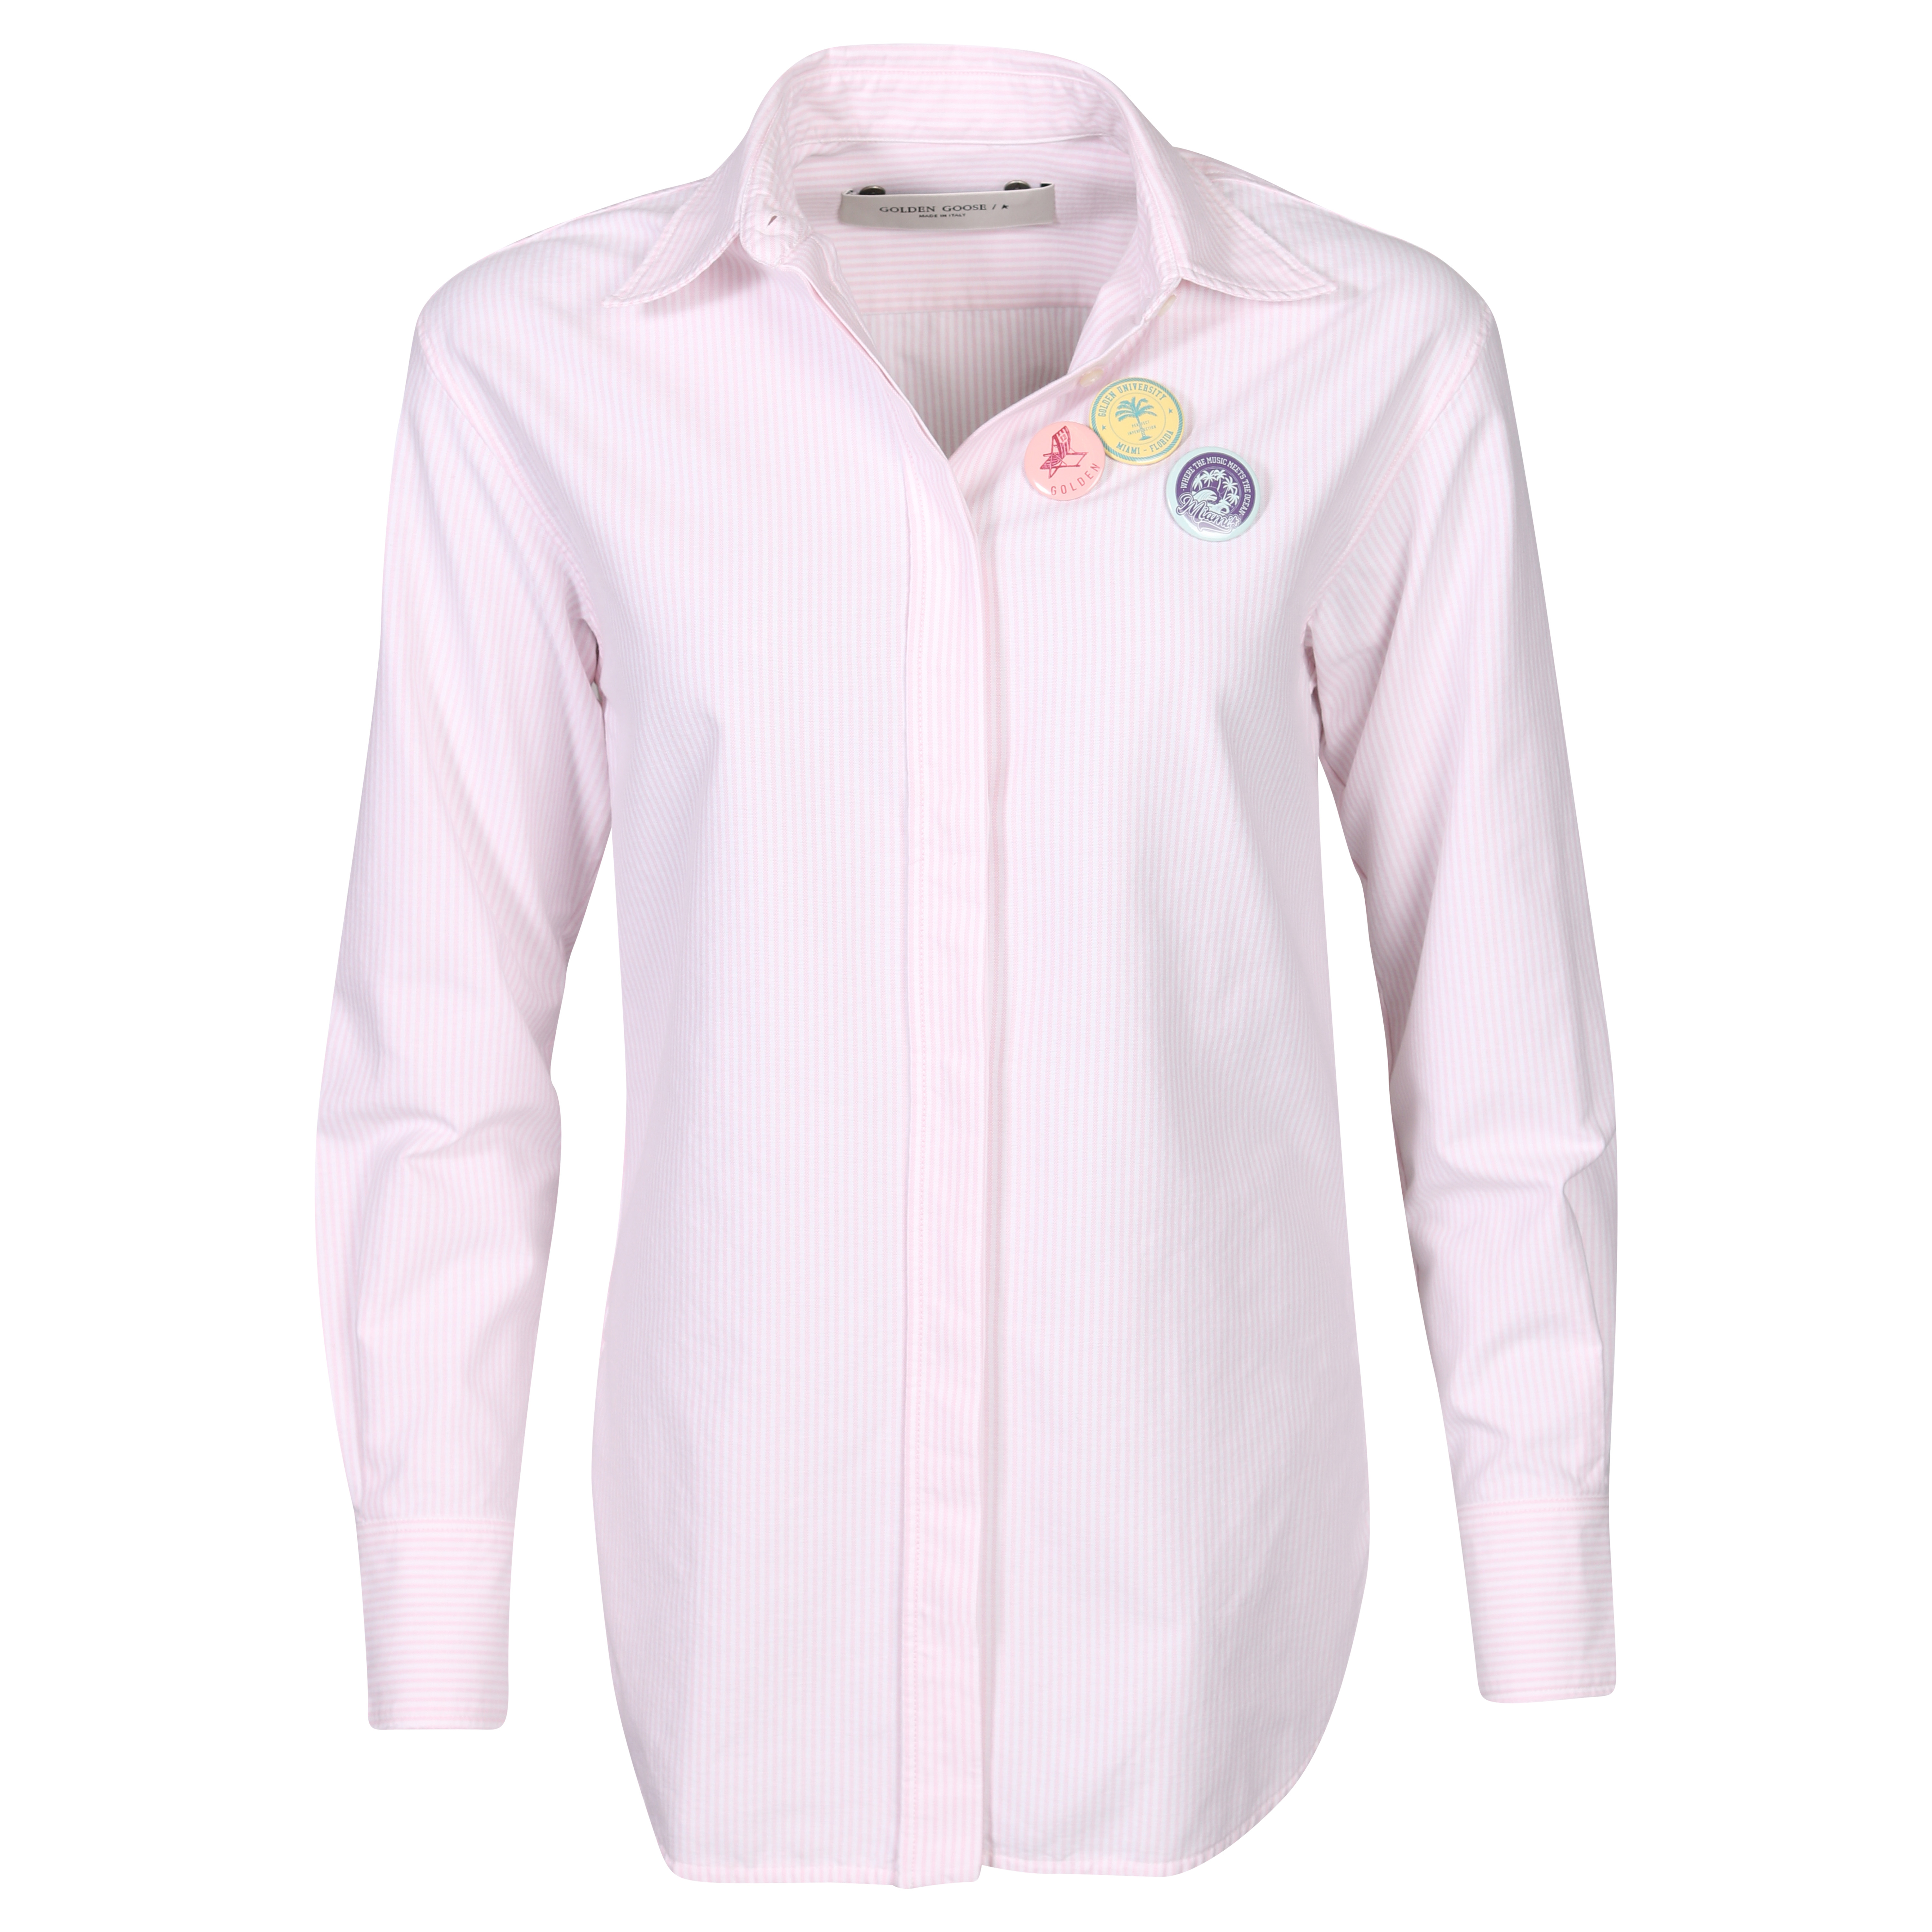 Golden Goose Journey Shirt Boyfriend Striped Oxford Cotton Pink/White